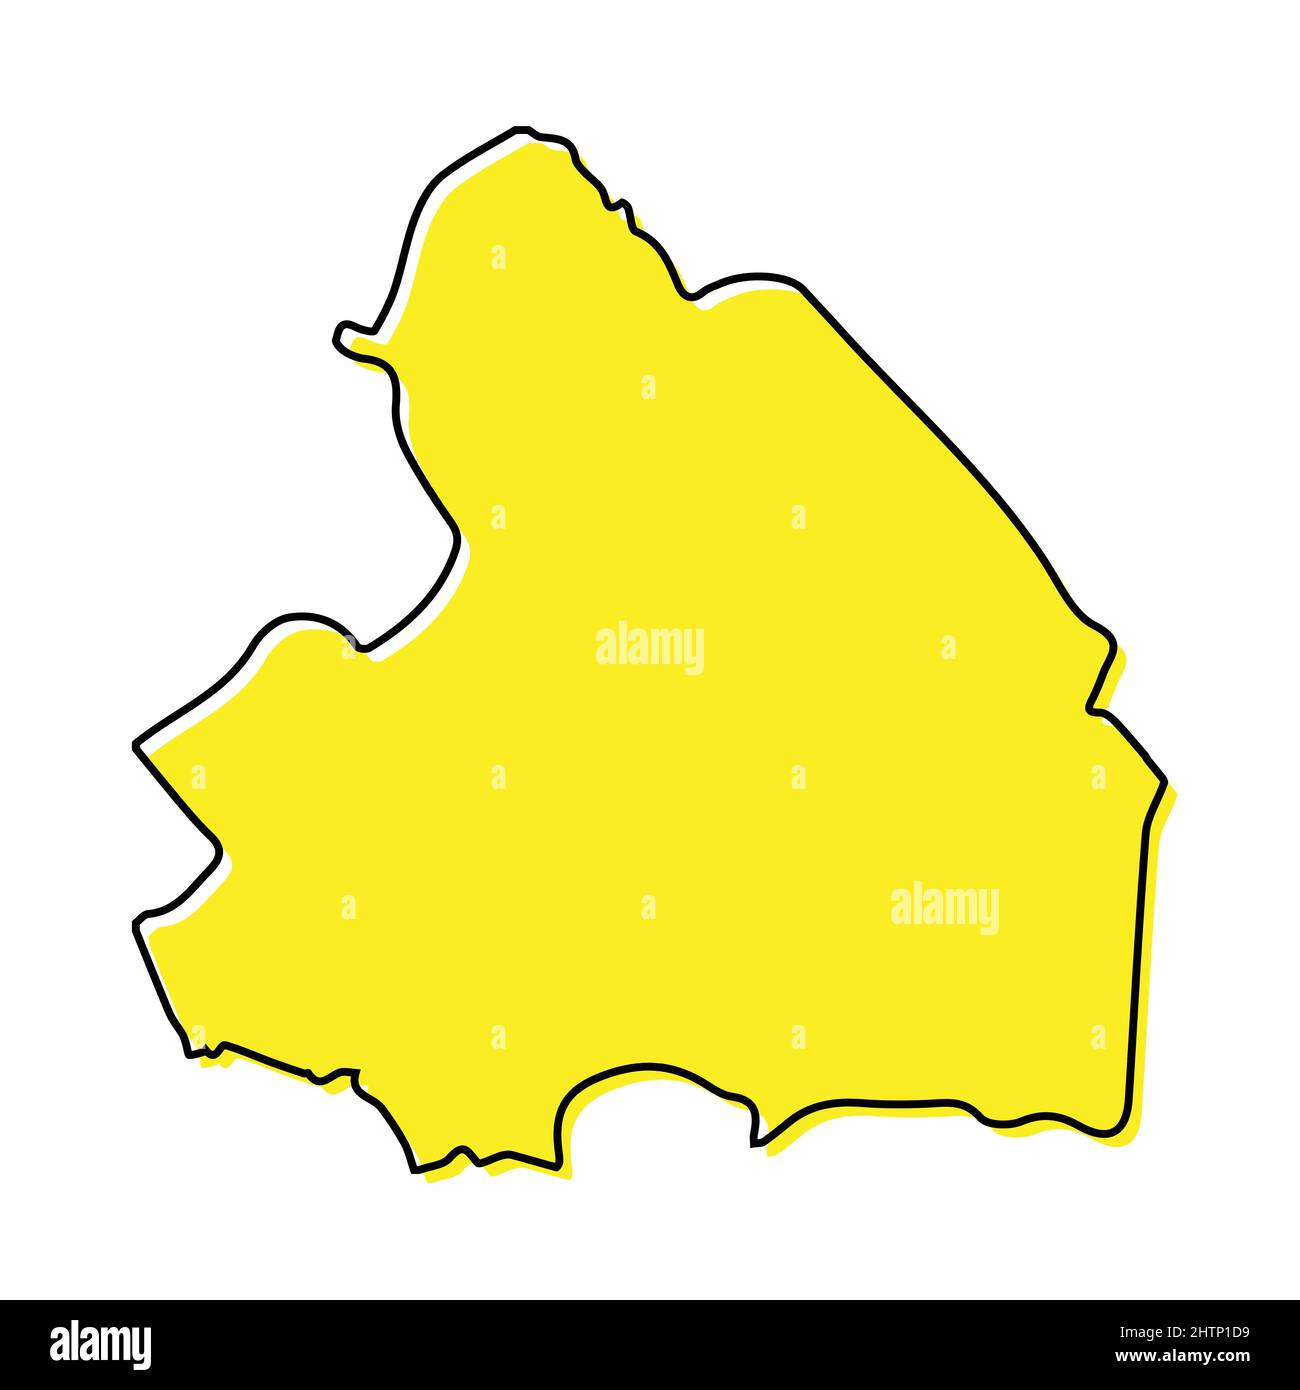 Einfache Übersichtskarte von Drenthe ist eine Provinz der Niederlande. Stilisiertes, minimalistisches Liniendesign Stock Vektor